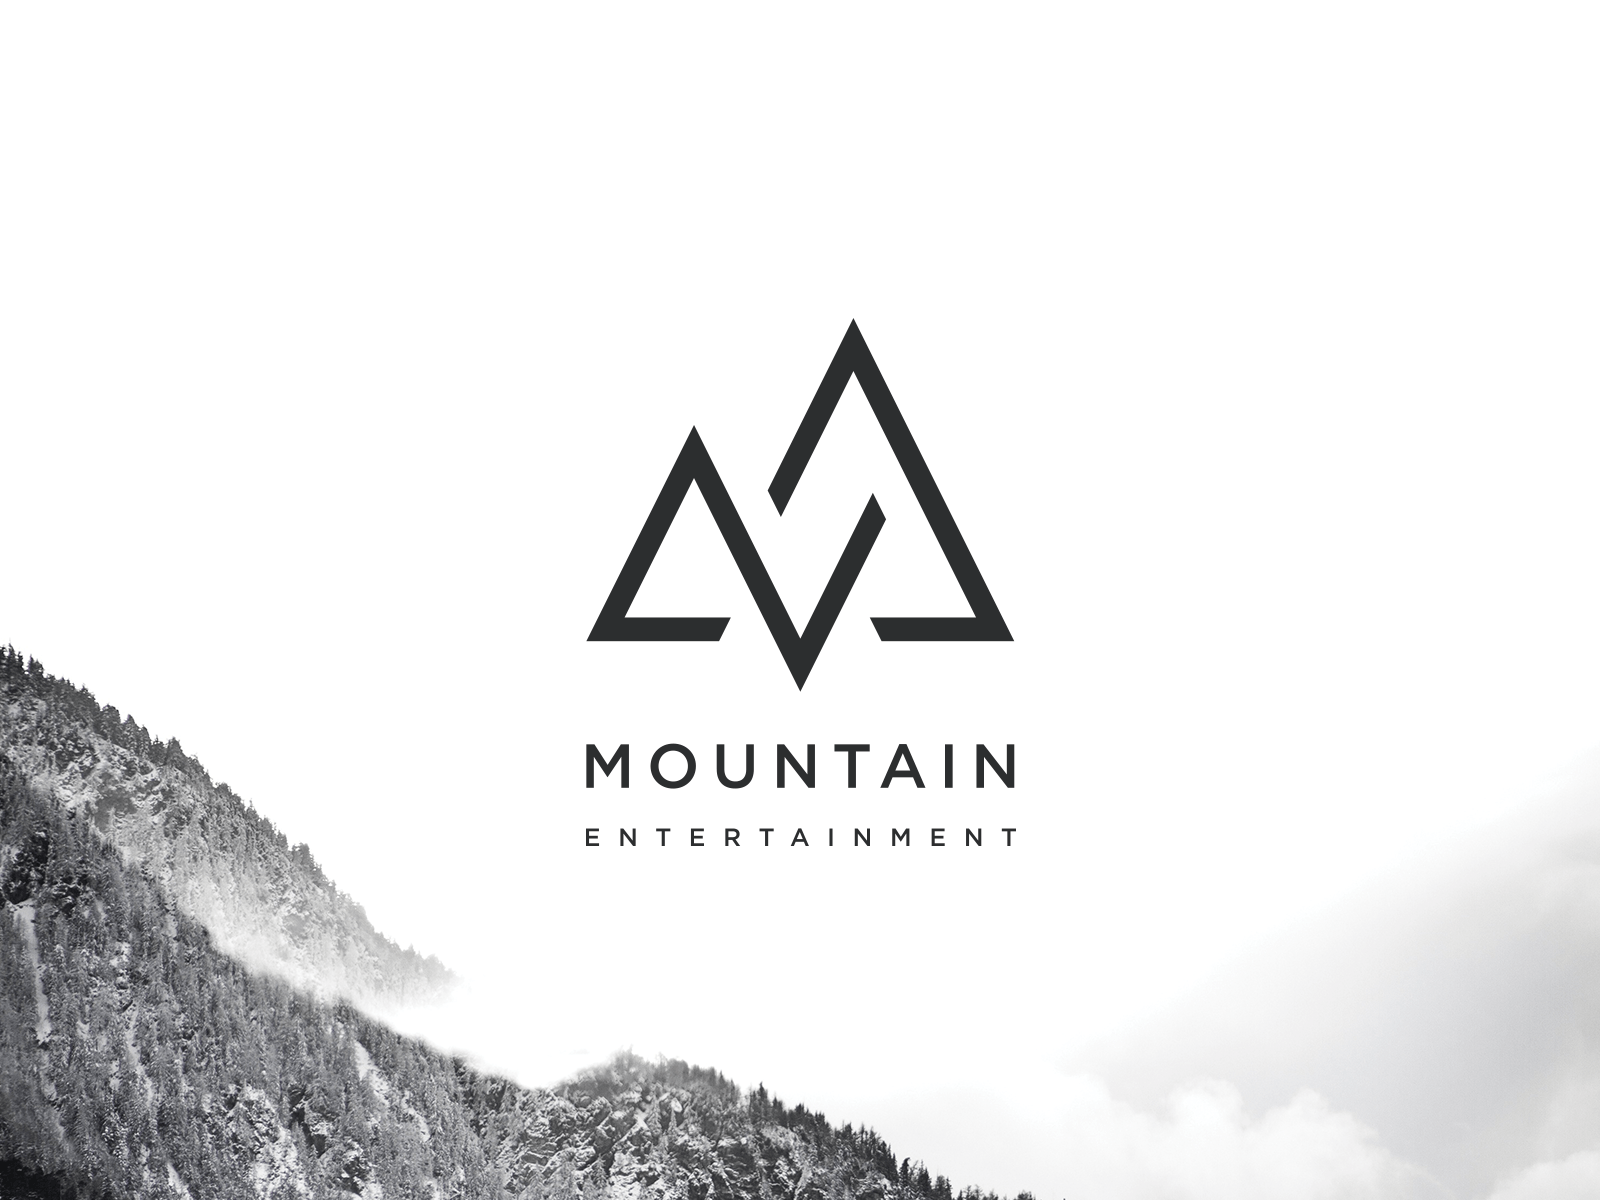 Mountain Entertainment Logo - Mountain Entertainment Logo on Inspirationde